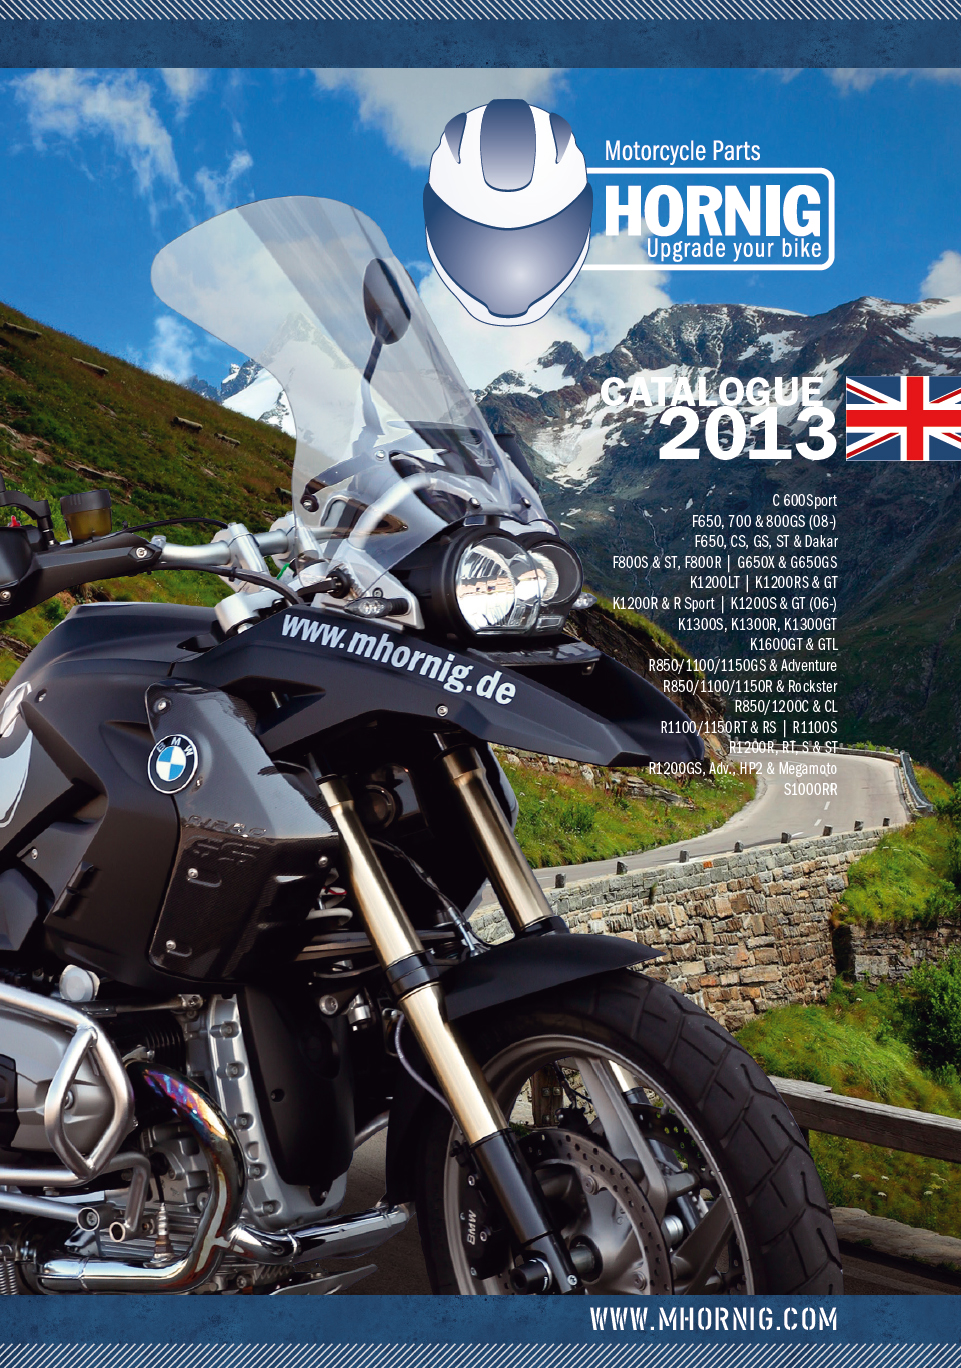 BMW Motorradzubehör Katalog 2013 von Hornig jetzt downloaden oder